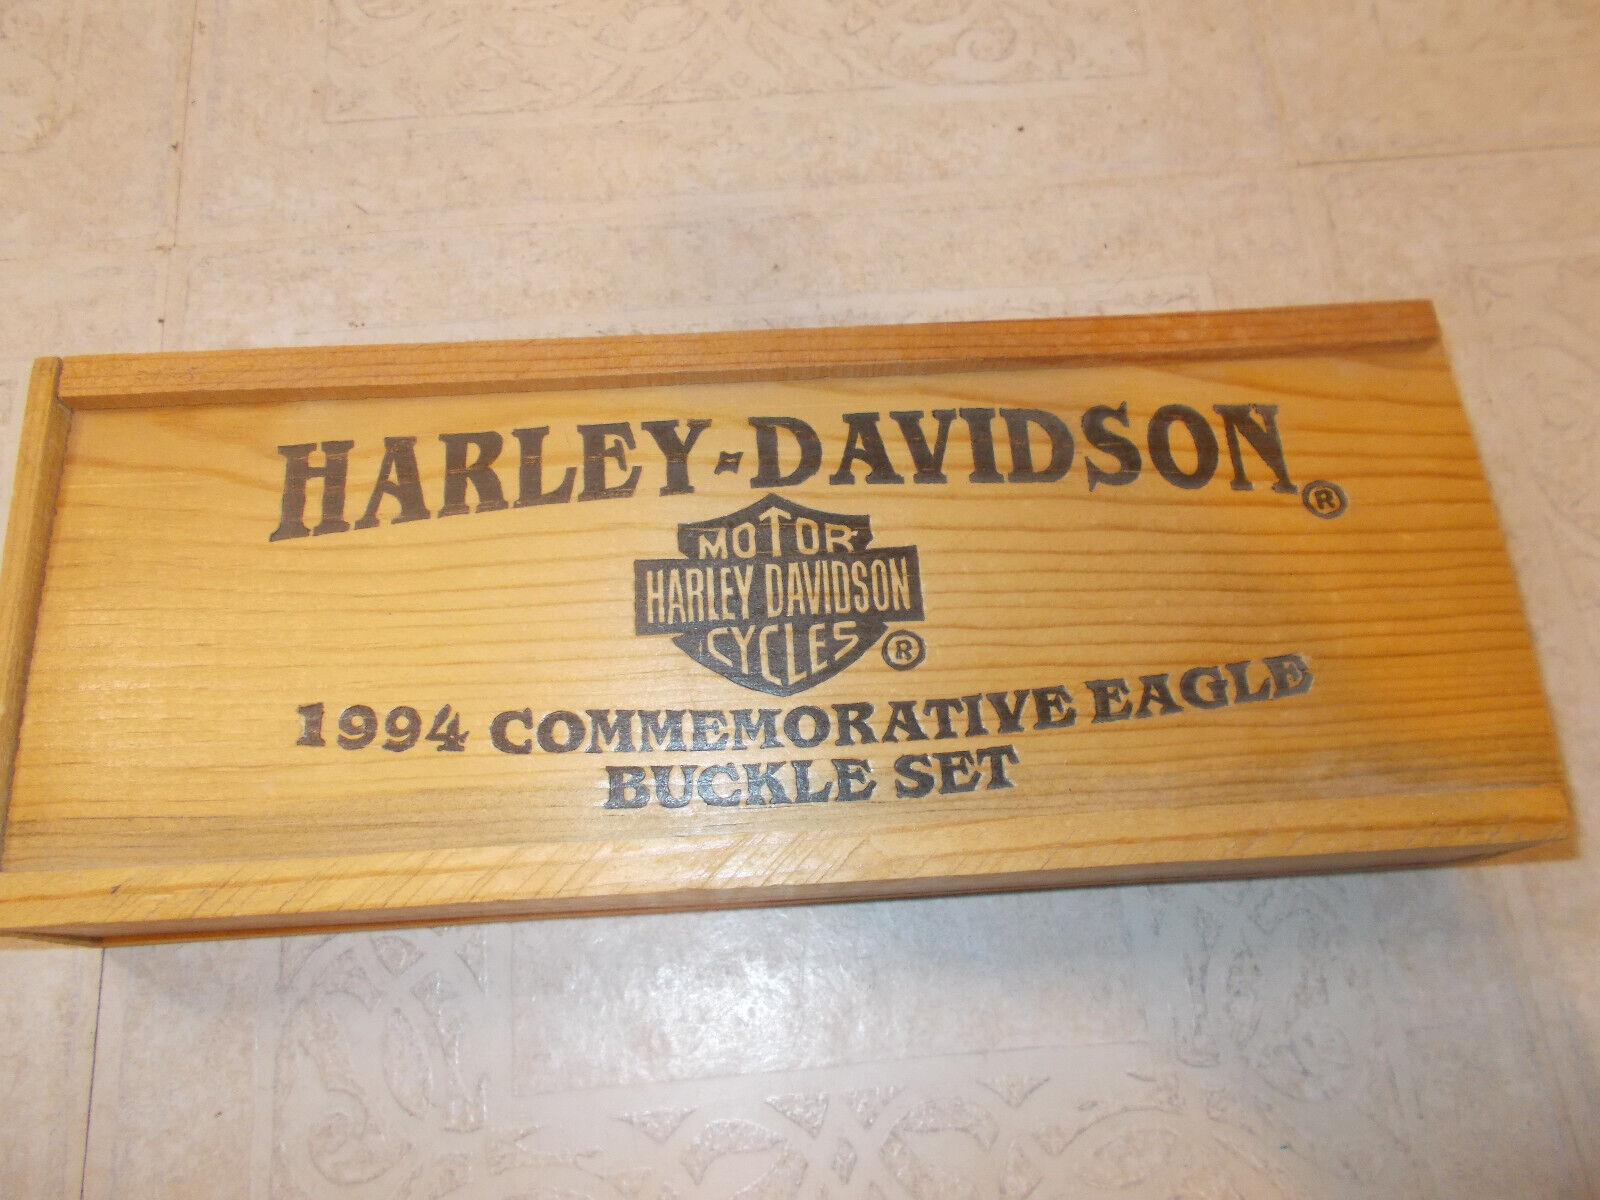 Harley-Davidson Limited Edition 1994 Commemorative Eagle Belt Buckle 3pc. Set